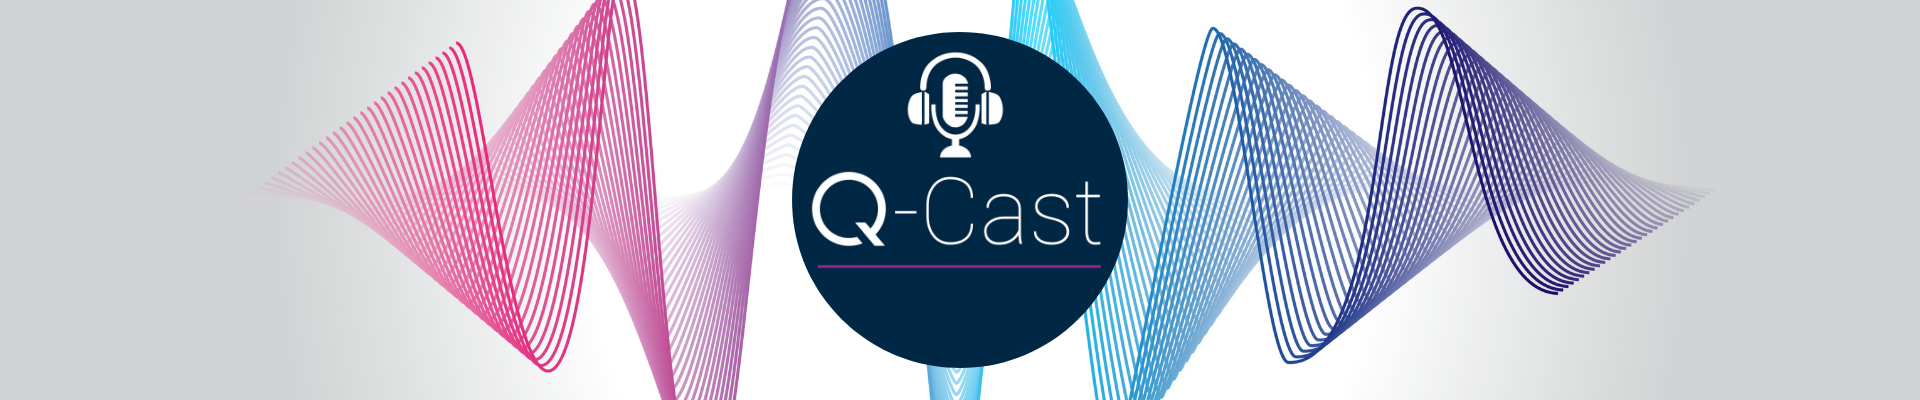 Q-Cast banner